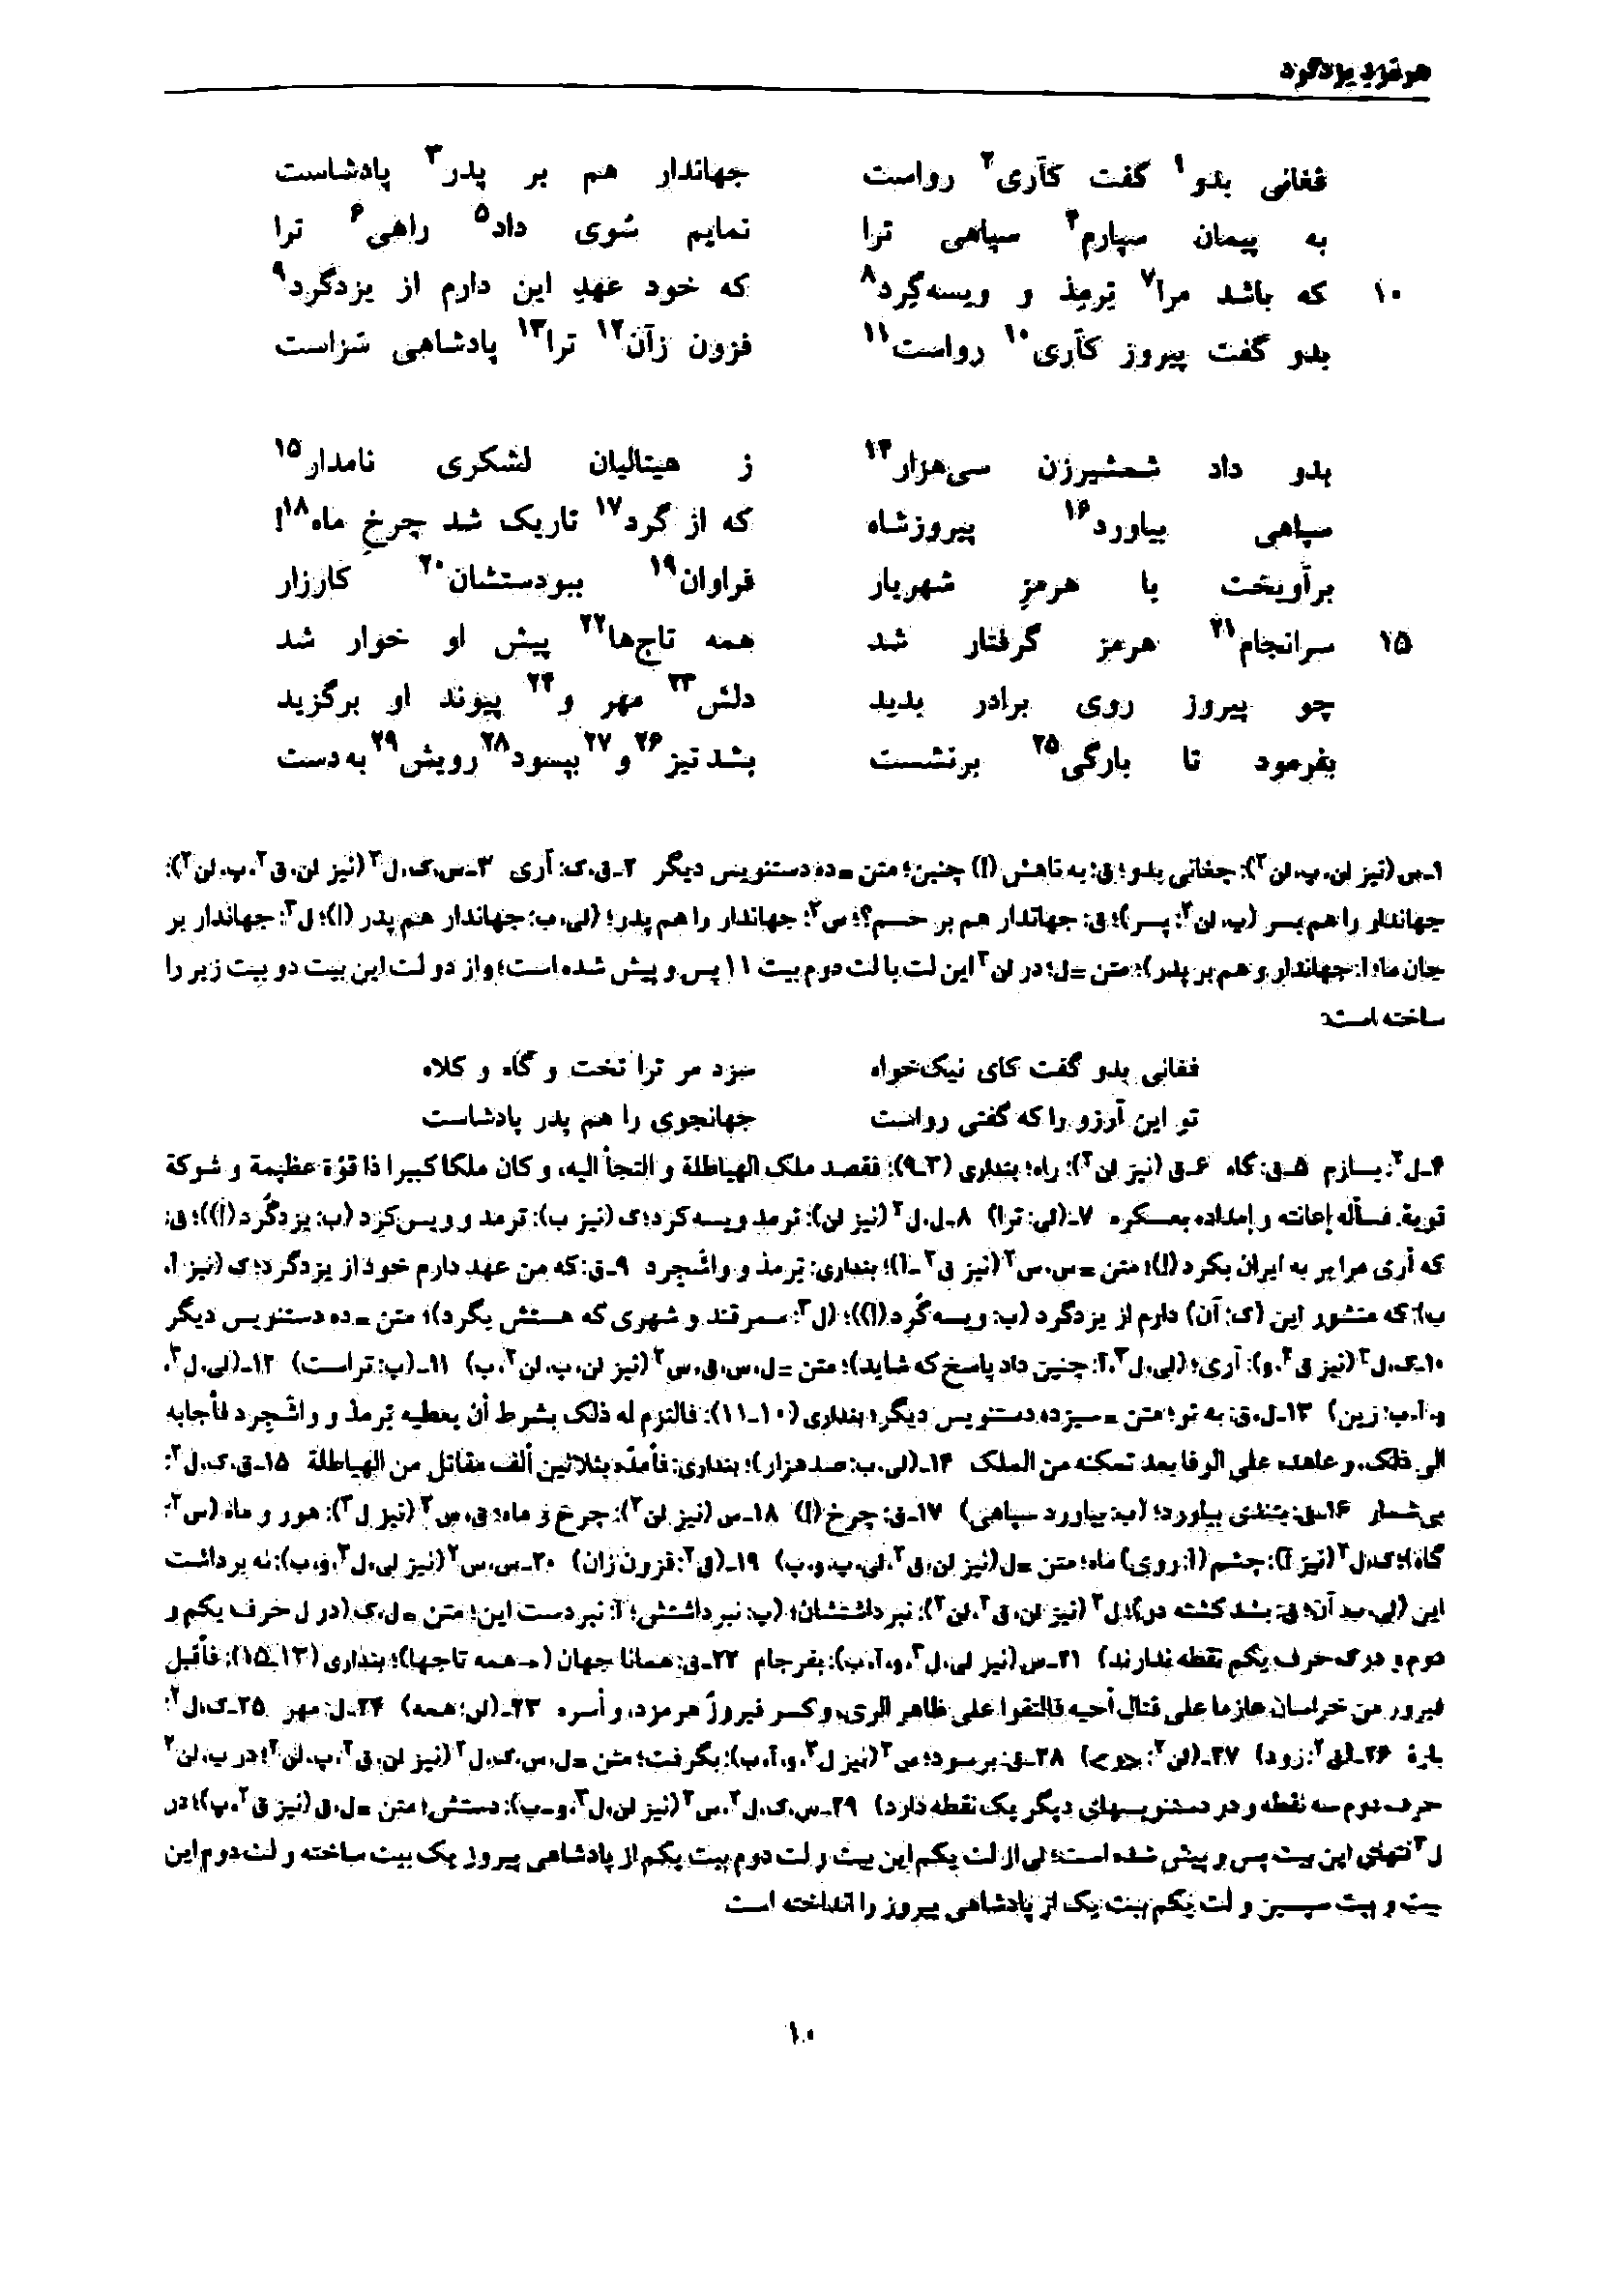 vol. 7, p. 10